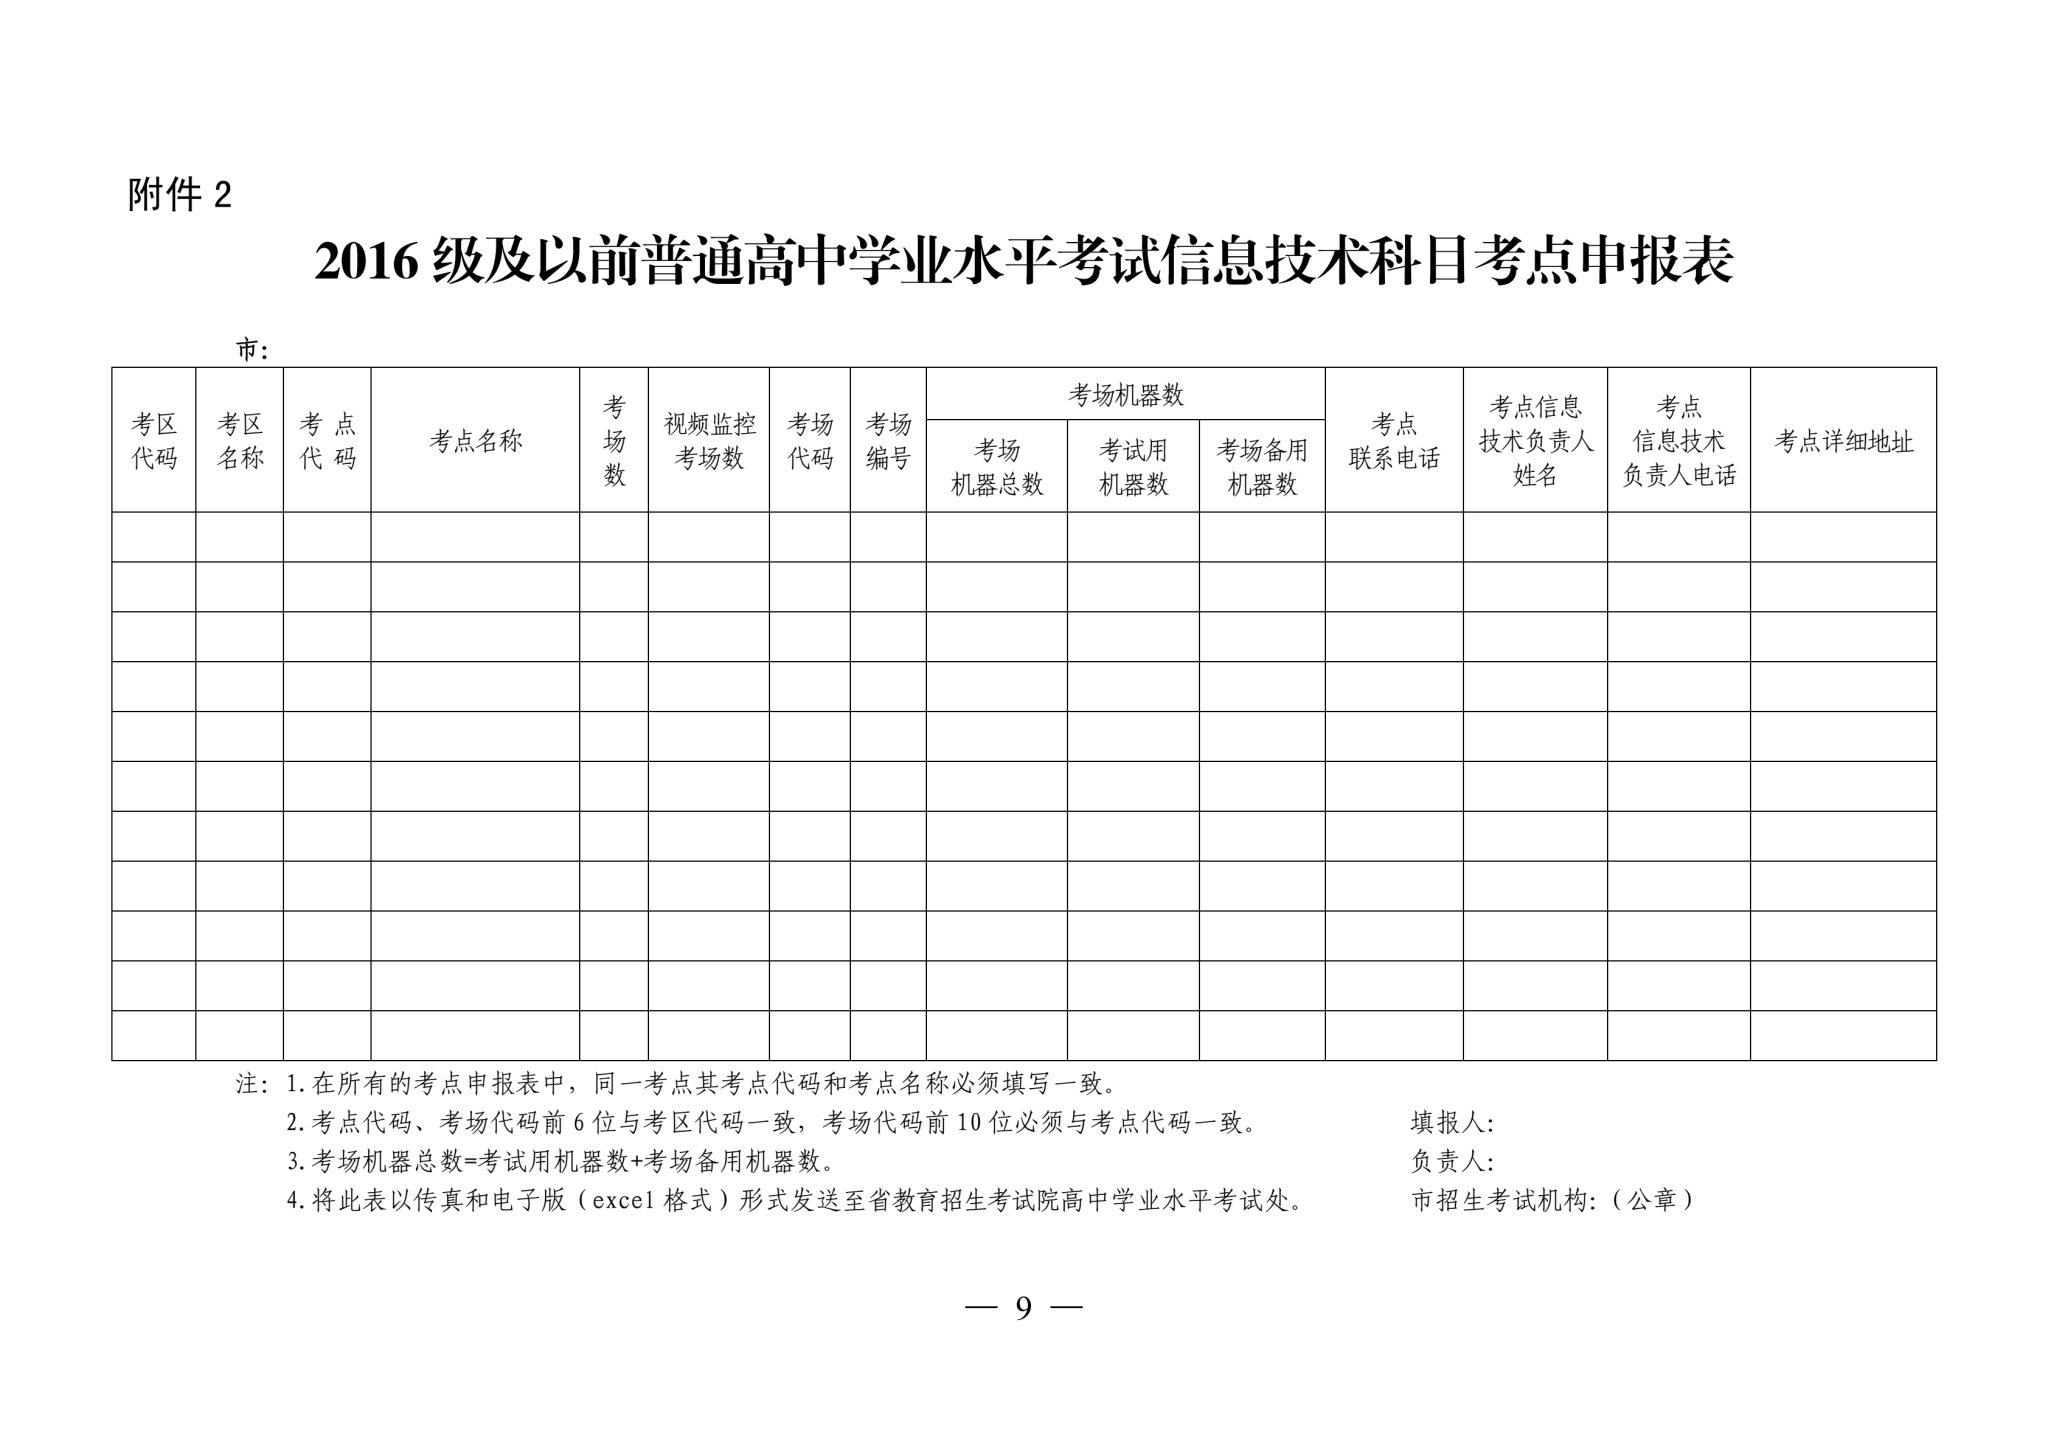 2019年1月学业水平考试通知_08.png